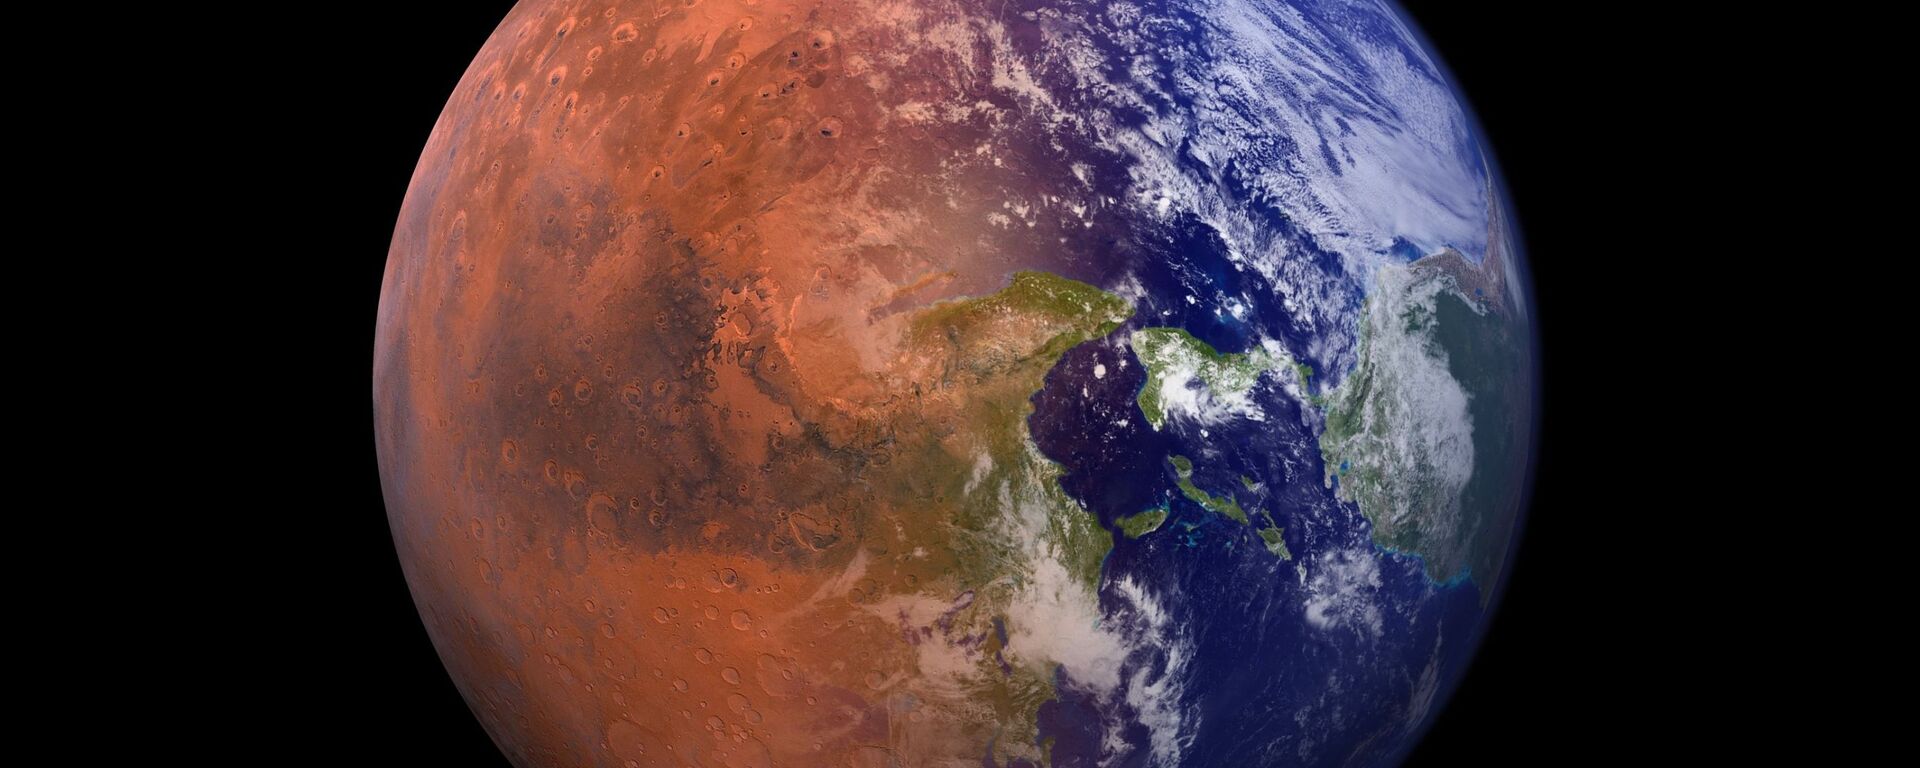 صورة خيالية تجمع كوكب الأرض مع نصف من كوكب المريخ  - سبوتنيك عربي, 1920, 11.01.2022